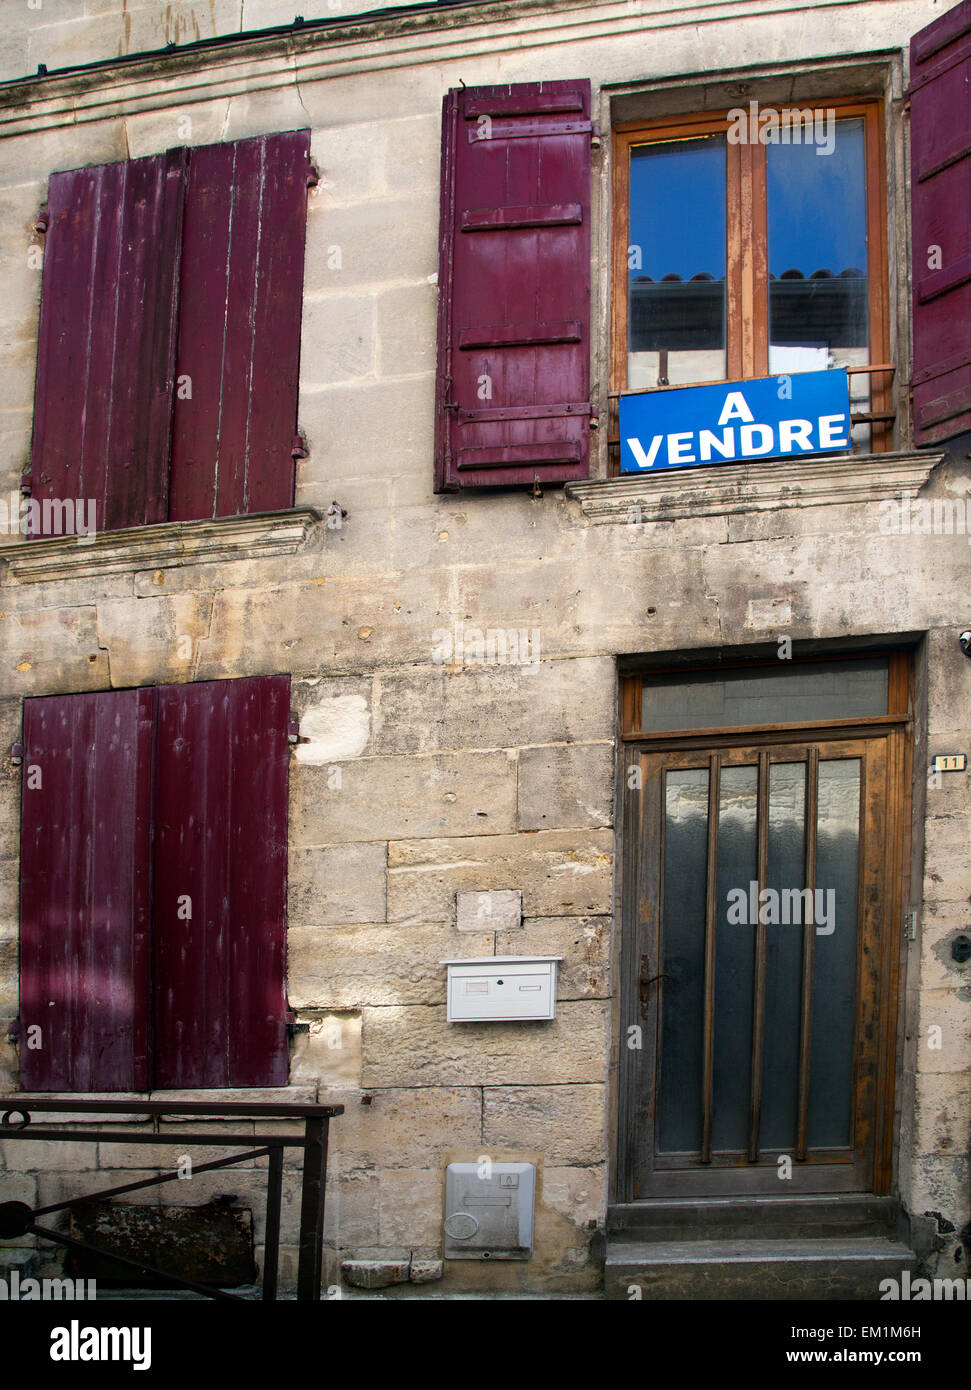 Casa Appartamento in vendita a vendre Francia proprietà francese Foto Stock